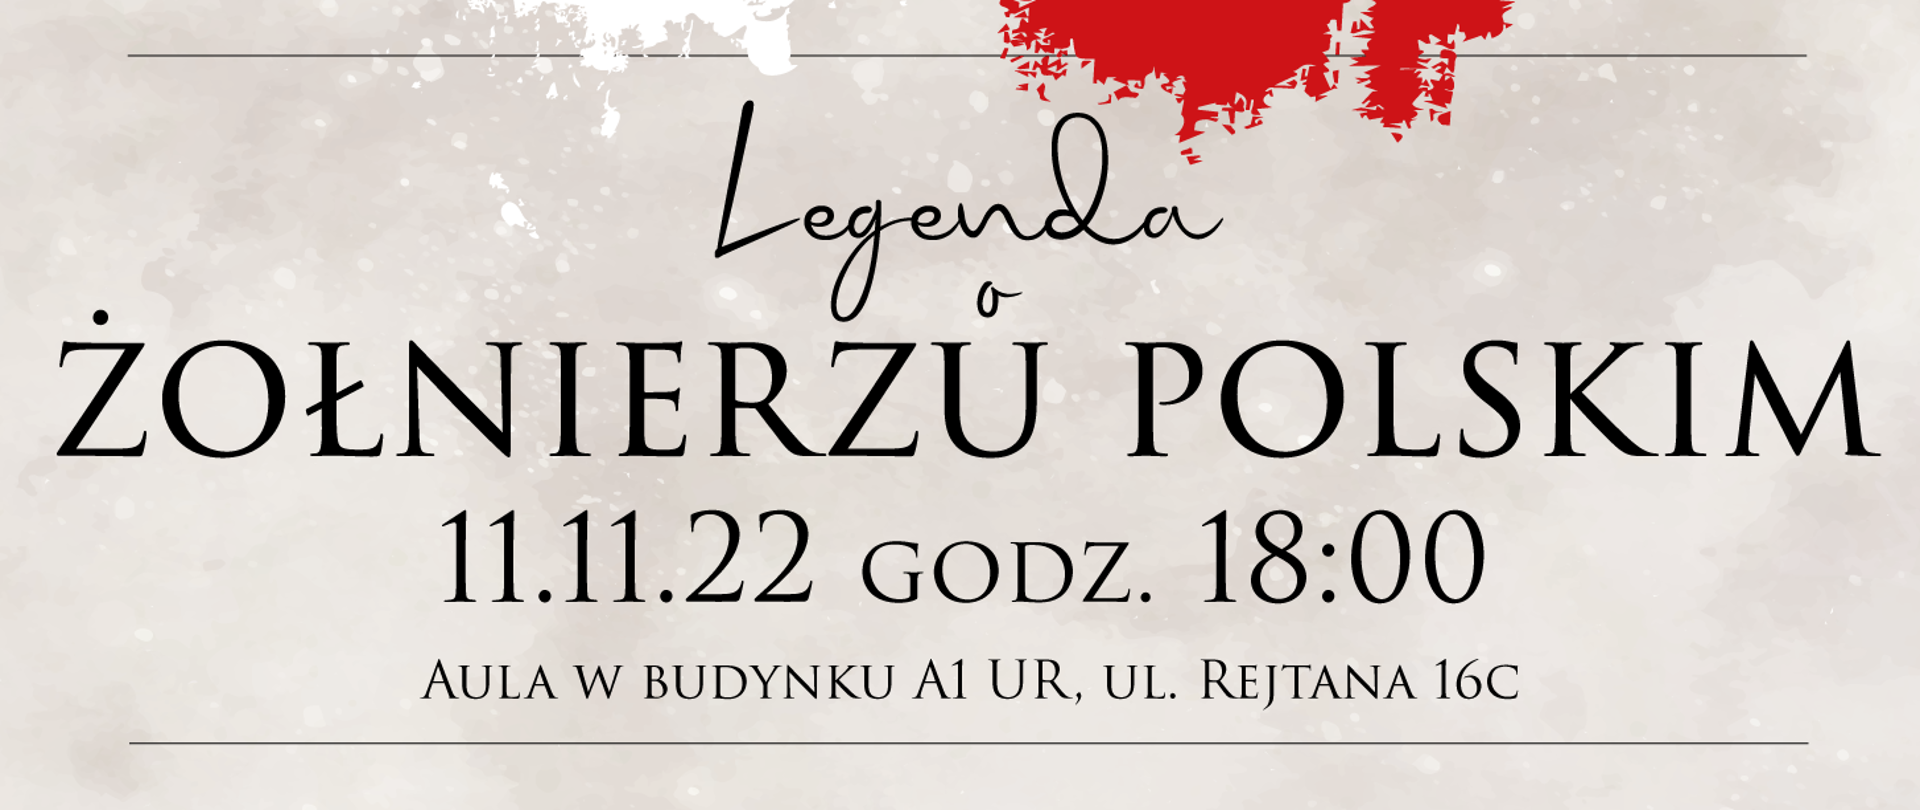 Baner z napisem "Legenda o żołnierzu polskim" oraz datą i miejscem wydarzenia. Czarne litery na szarawym tle. U góry fragment pionowej flagi biało-czerwonej